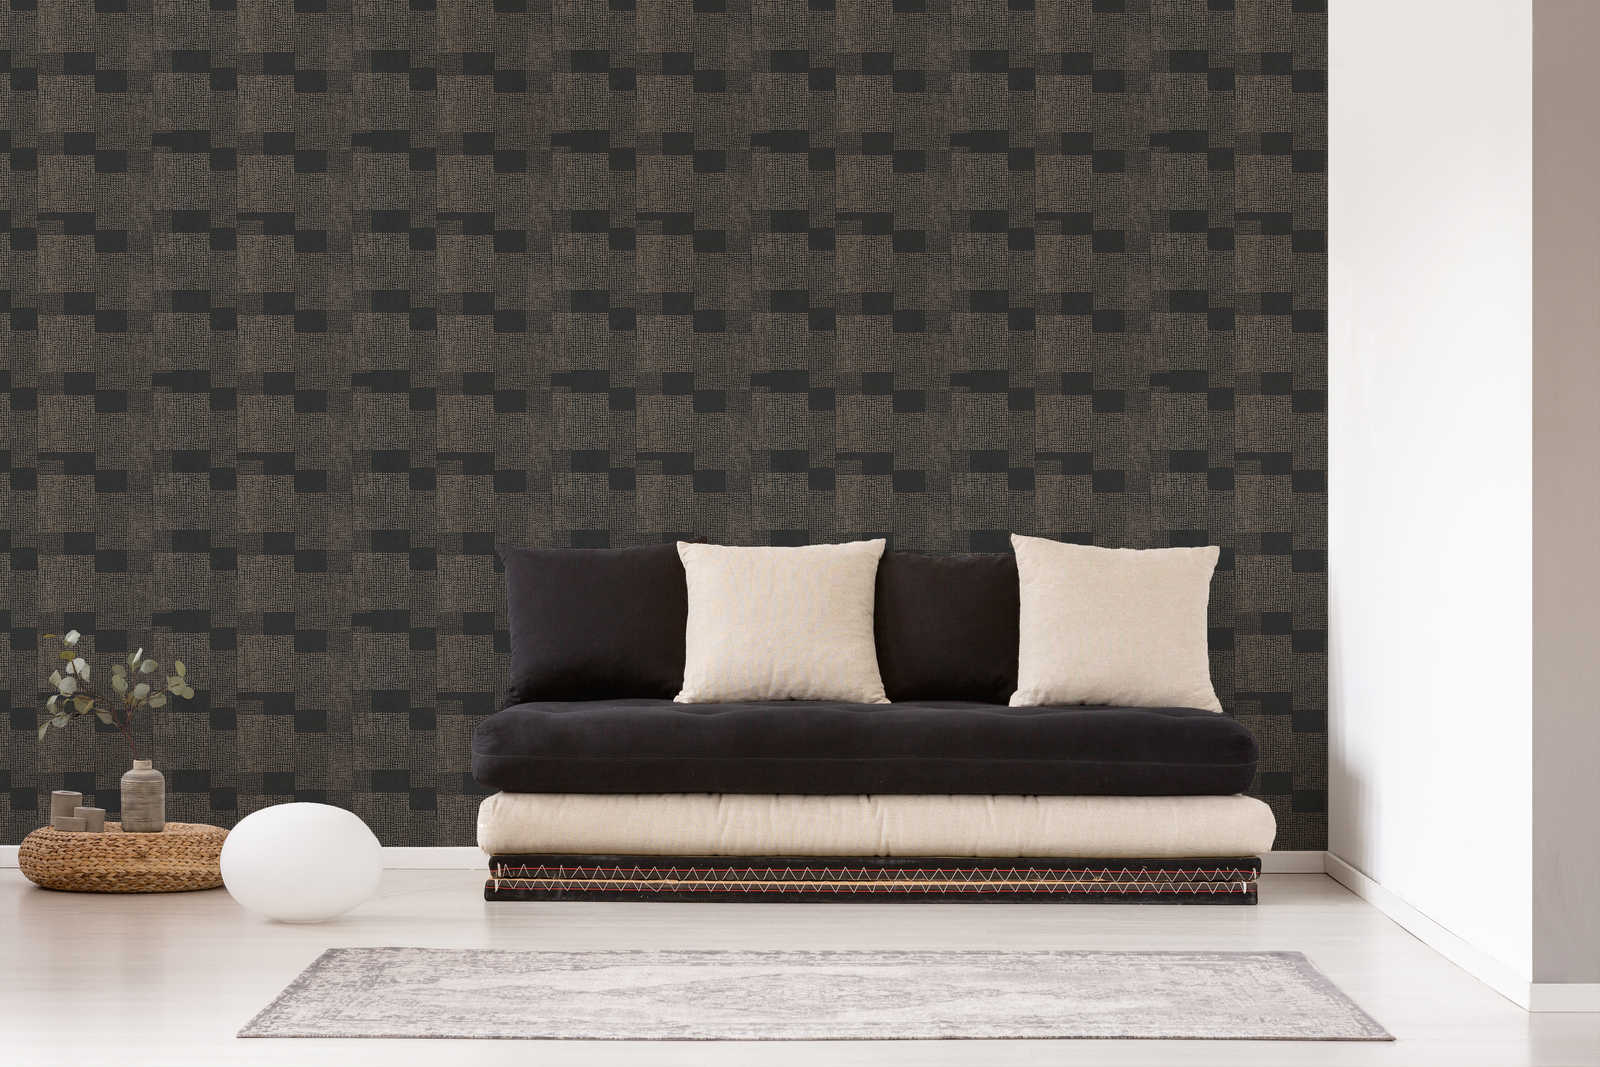             Patroonbehang ethno design - zwart, grijs, metallic
        